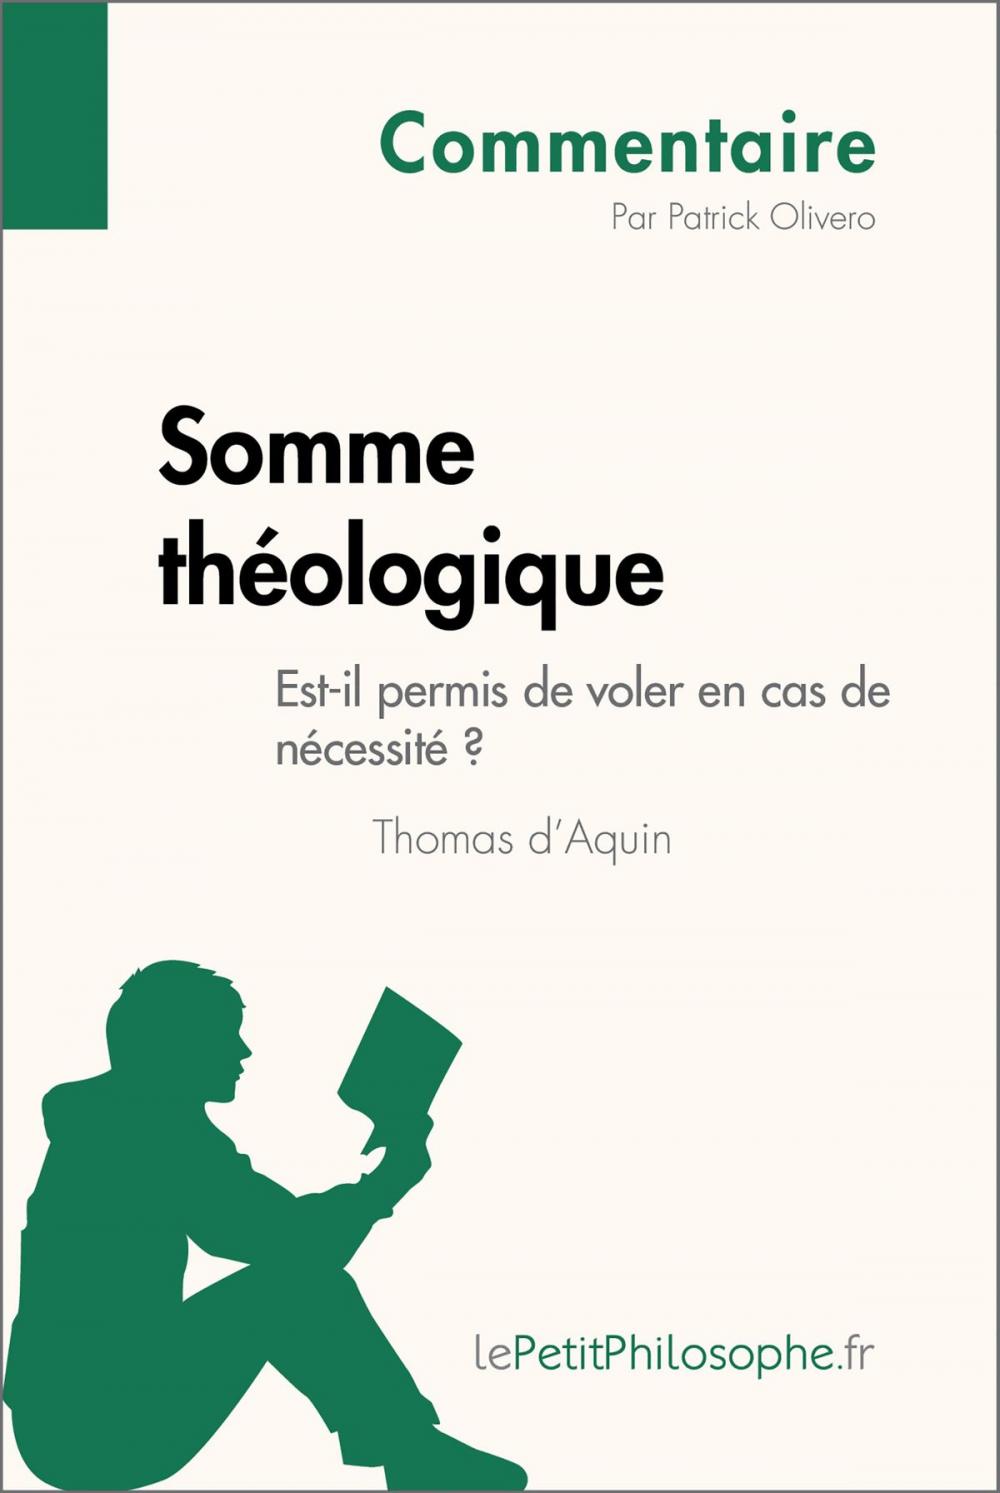 Big bigCover of Somme théologique de Thomas d'Aquin - Est-il permis de voler en cas de nécessité ? (Commentaire)